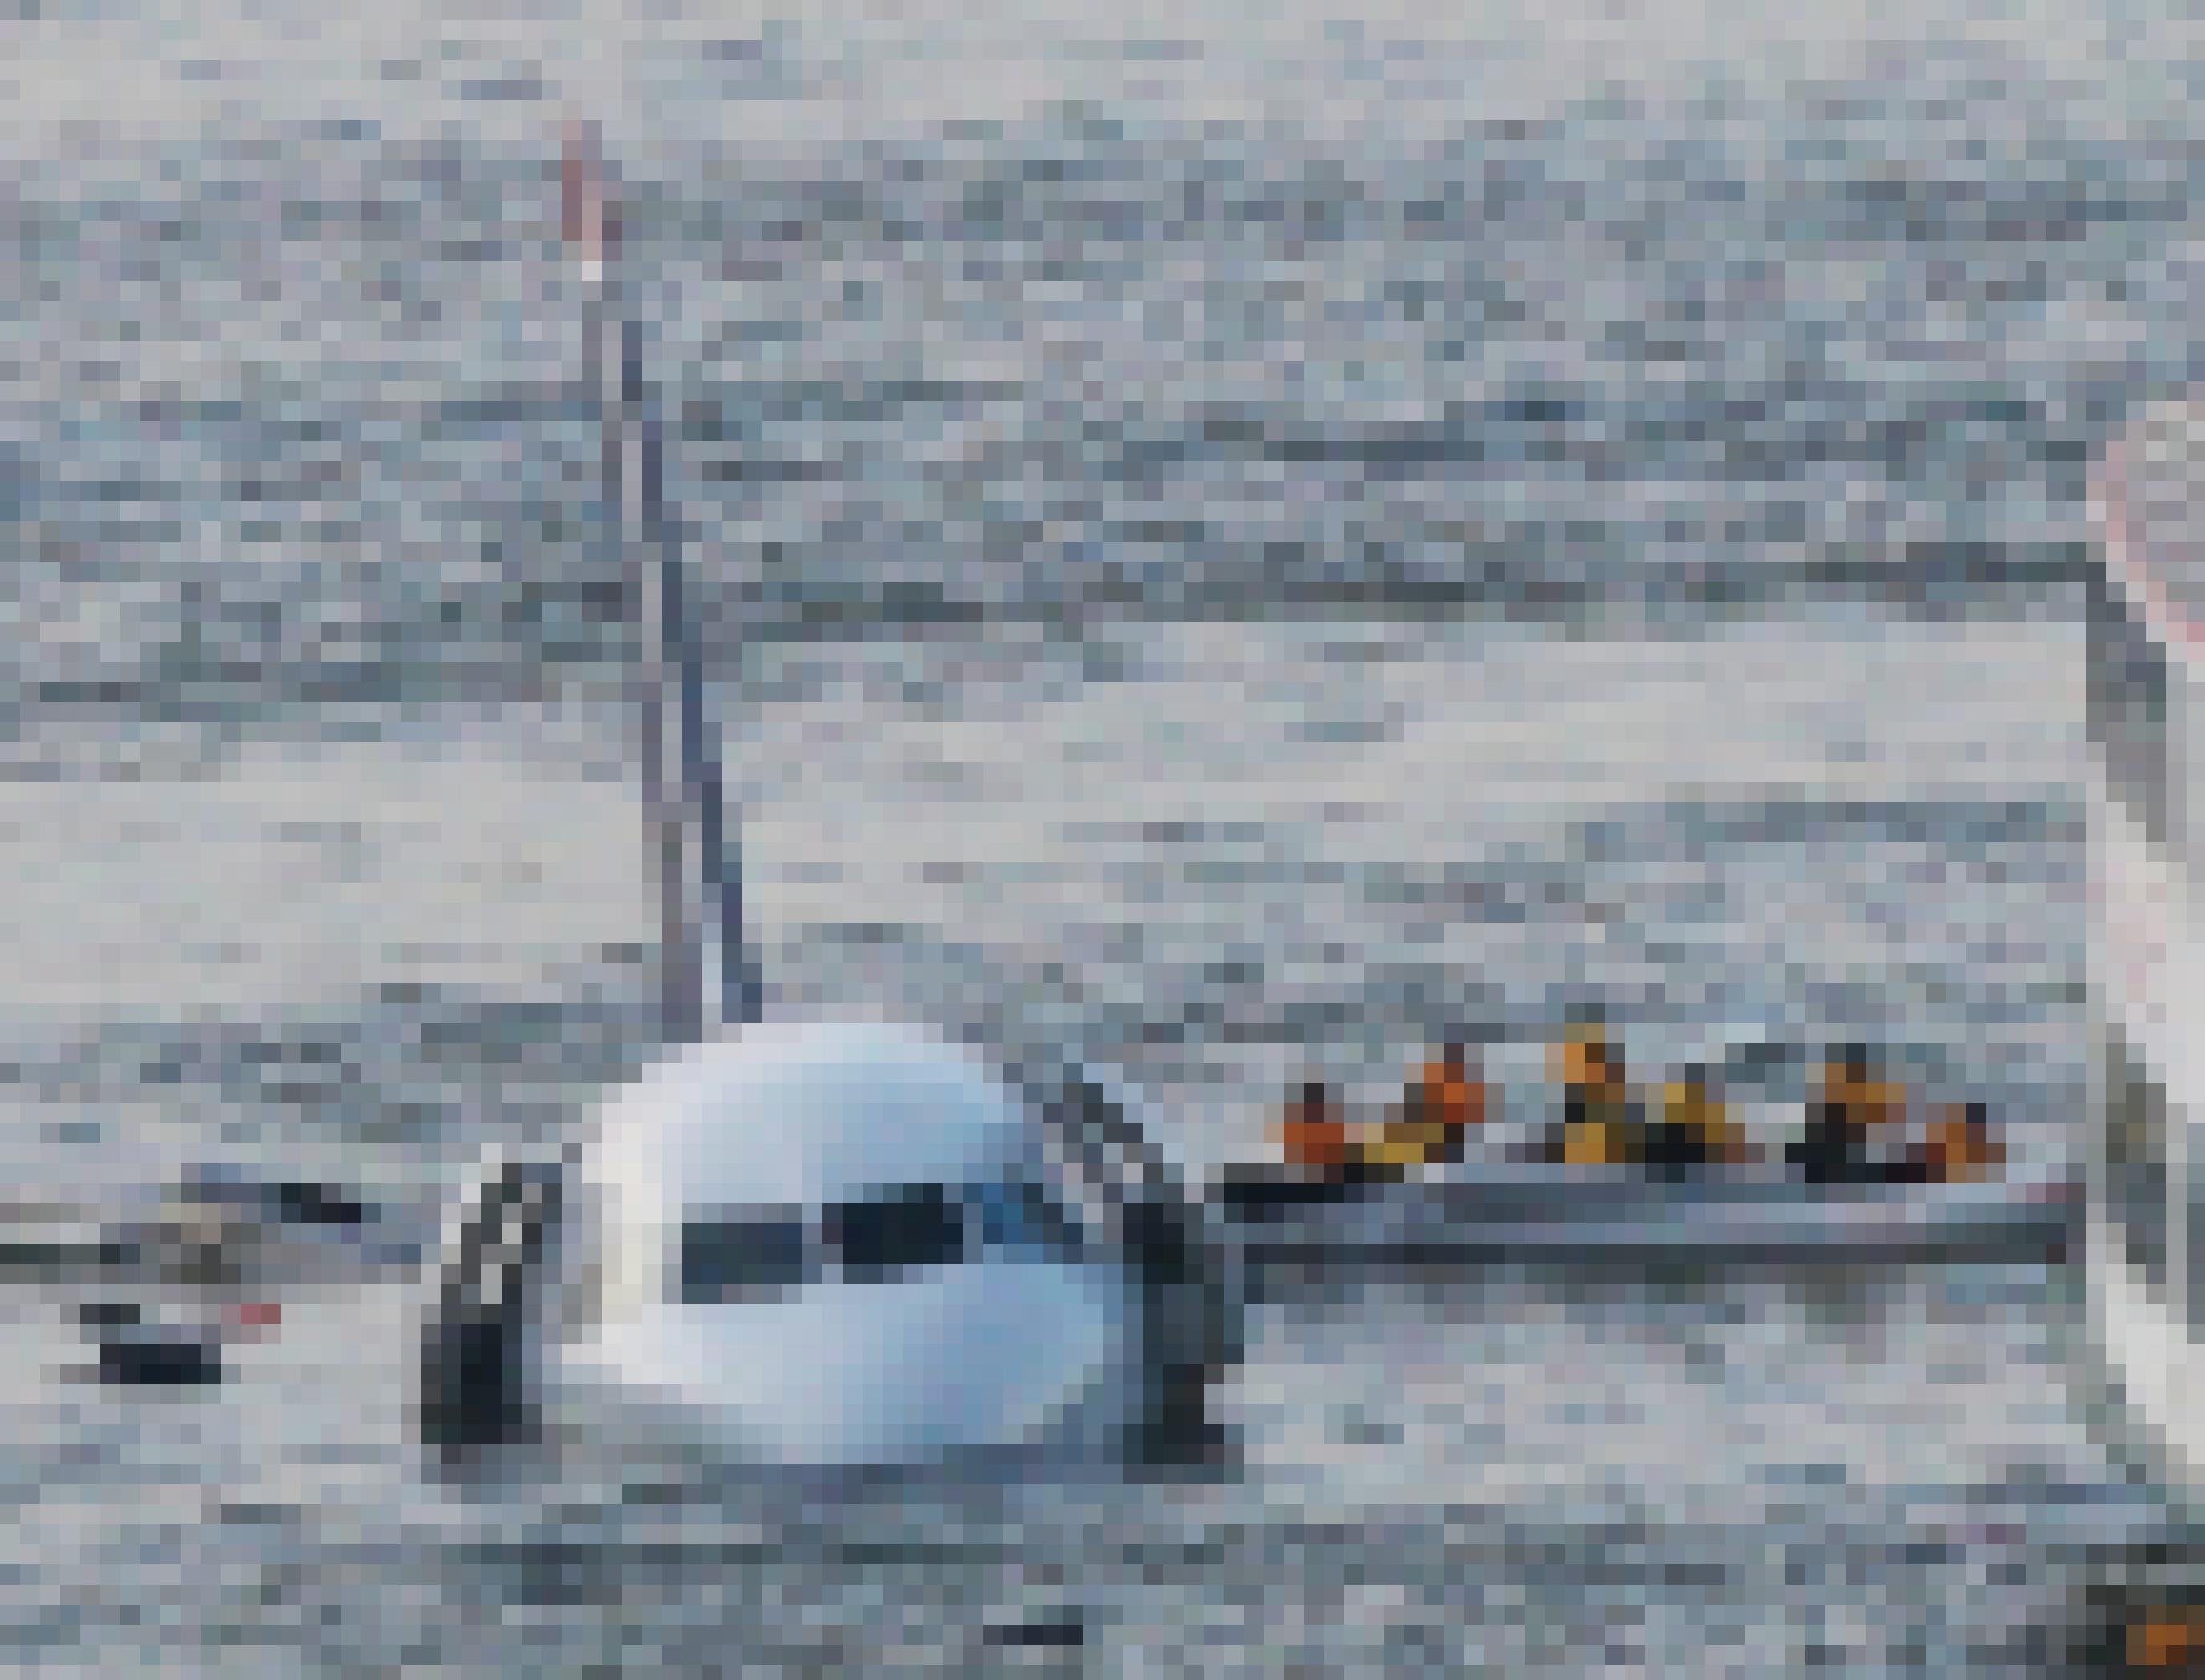 Passagiere verlassen über ein Rettungsfloß ein Flugzeug, das im Wasser schwimmt